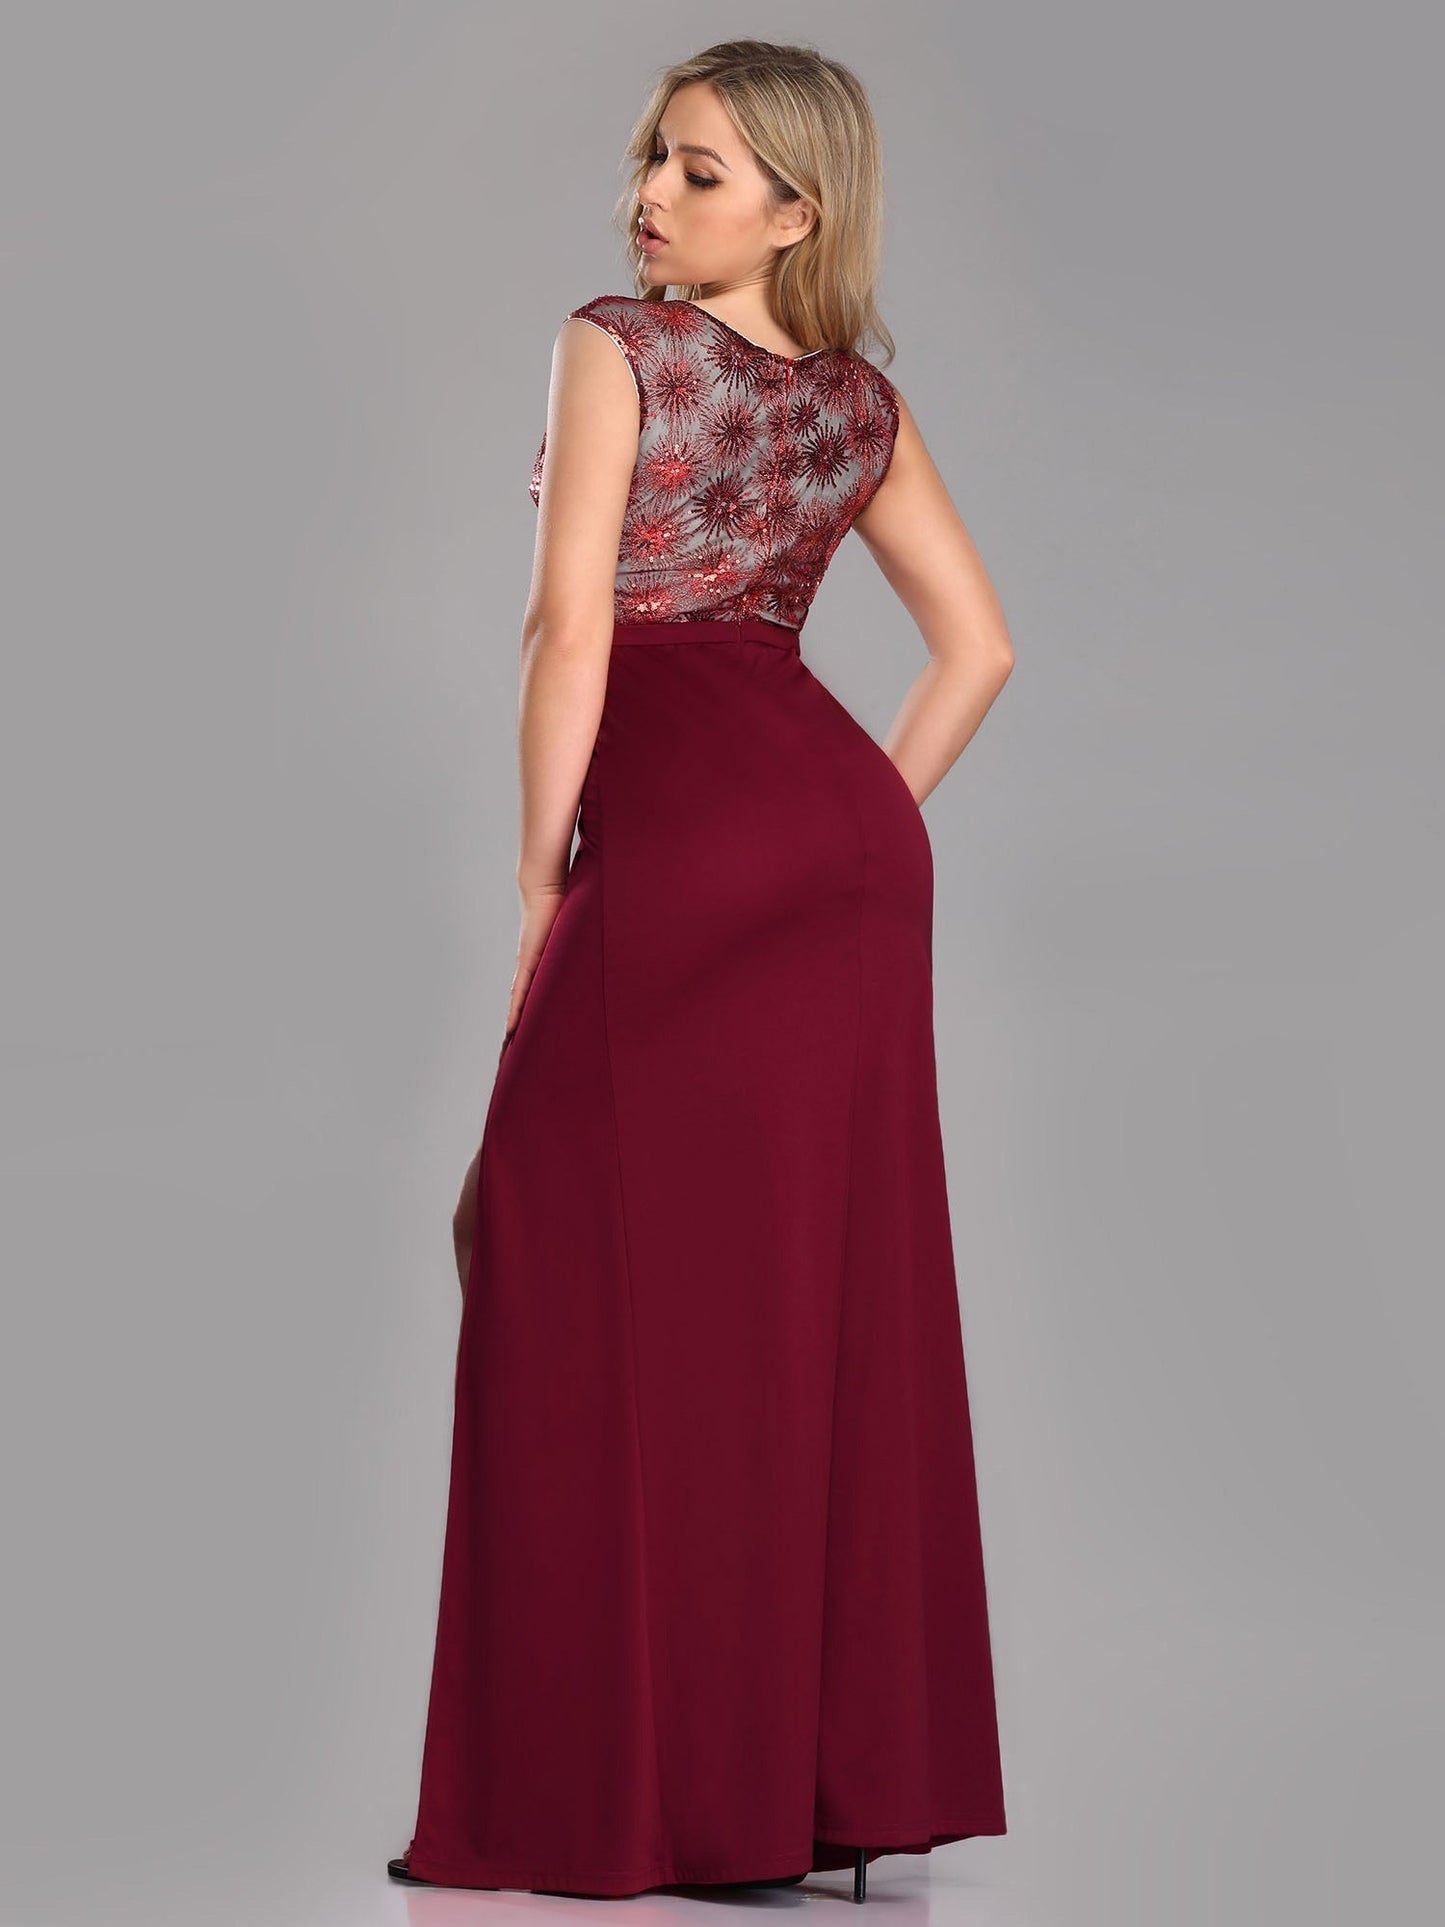  - Floral Sequin Print Burgundy Prom Dresses EZ07729 - MsDressly